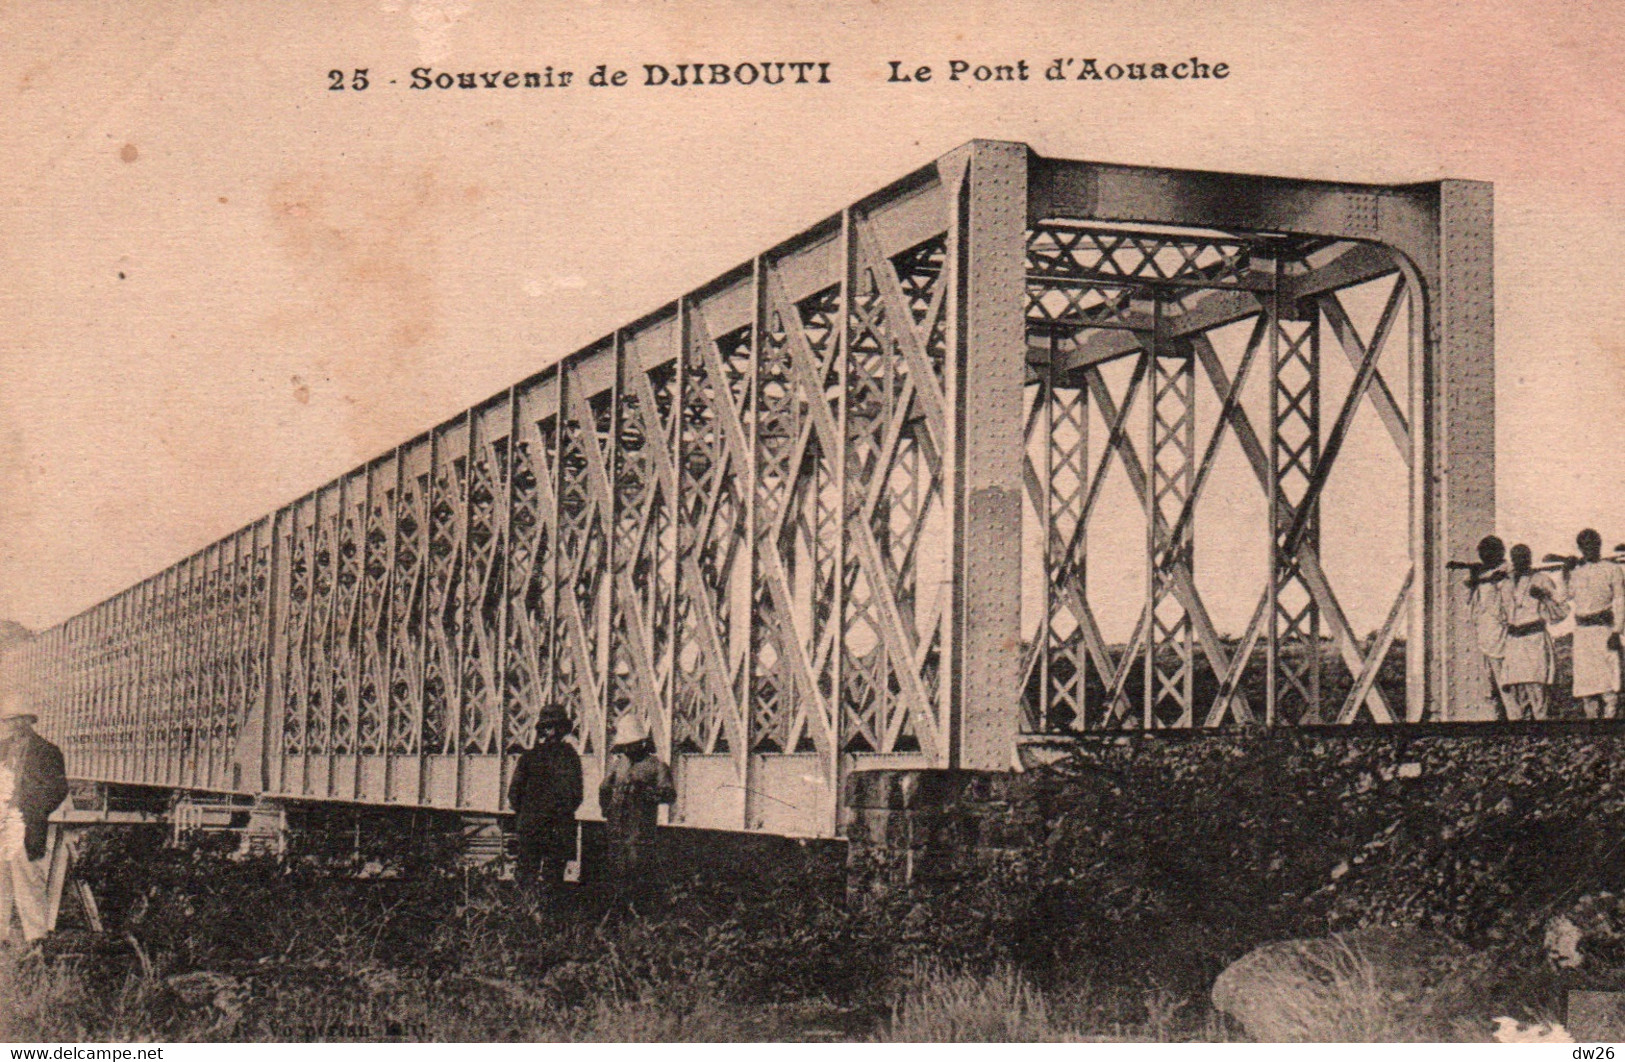 Souvenir De Djibouti - Le Pont D'Aouache - Edition Vorperian - Carte N° 25 Non Circulée - Gibuti